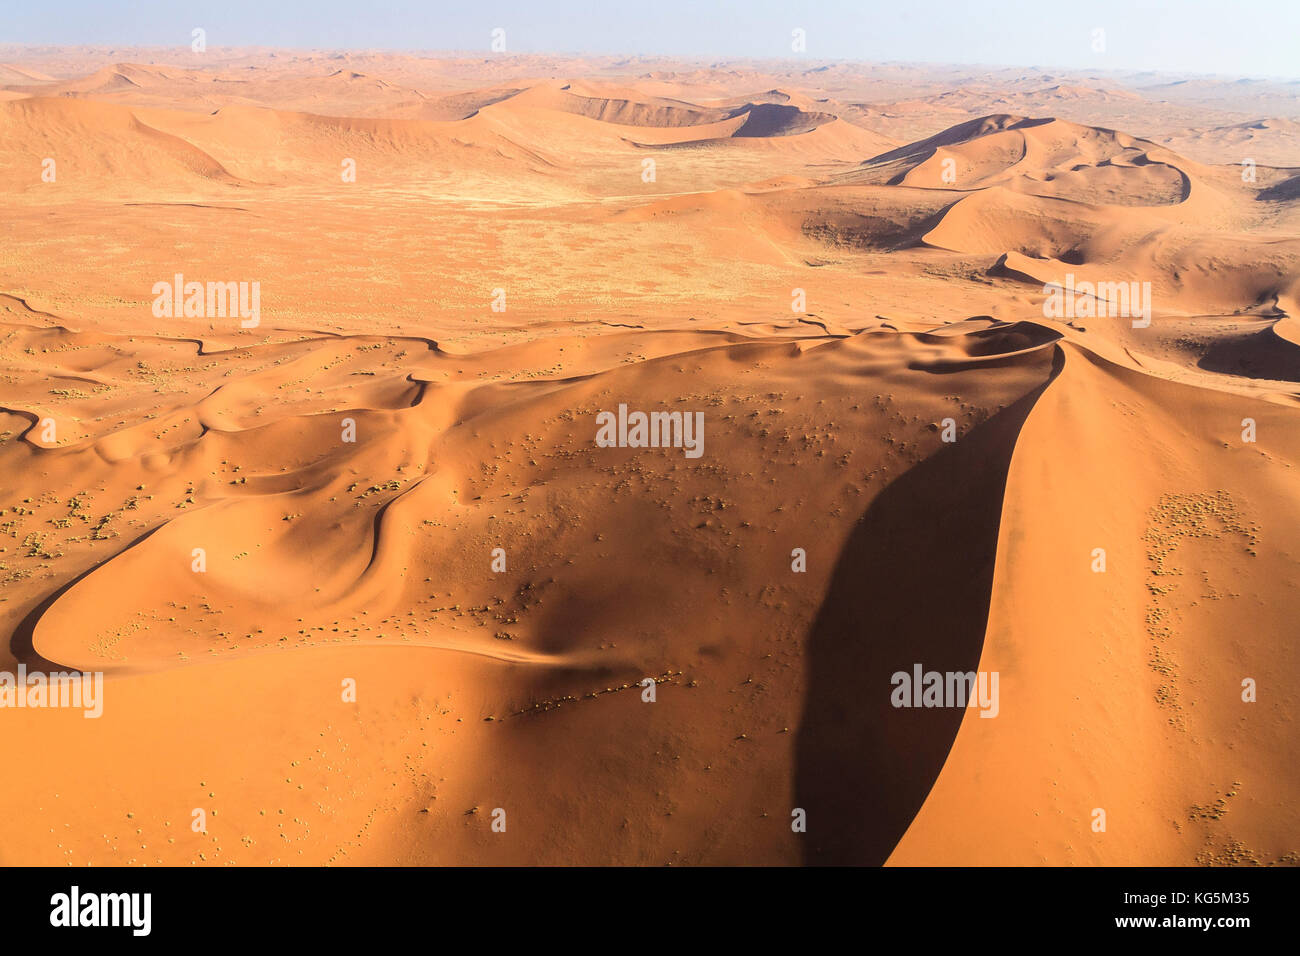 Vista aérea de las dunas modeladas por el viento del desierto de Namib namibia África meridional Foto de stock